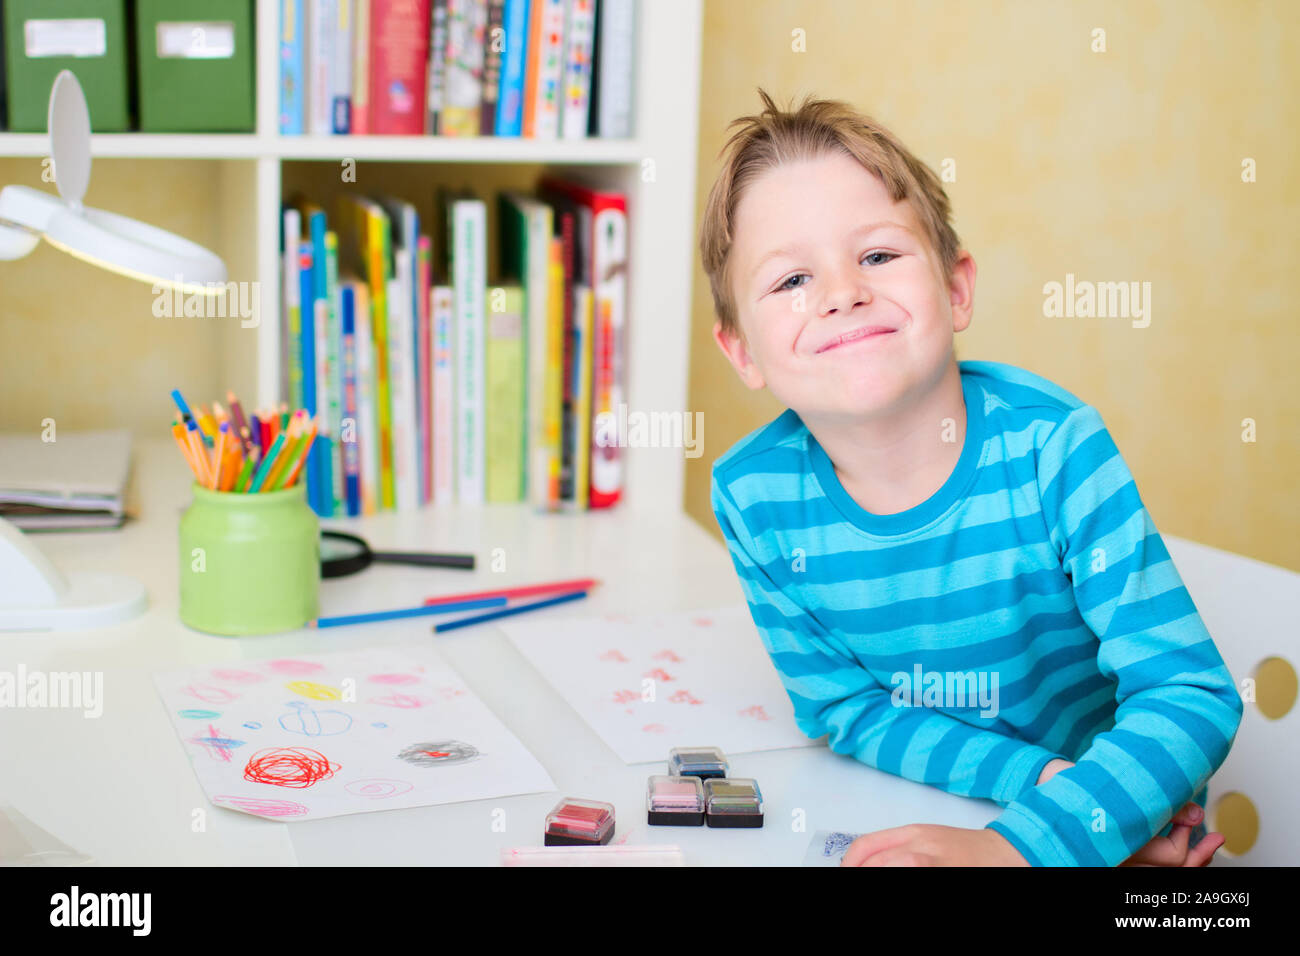 Junge spielt im Kinderzimmer, Finnland Stock Photo